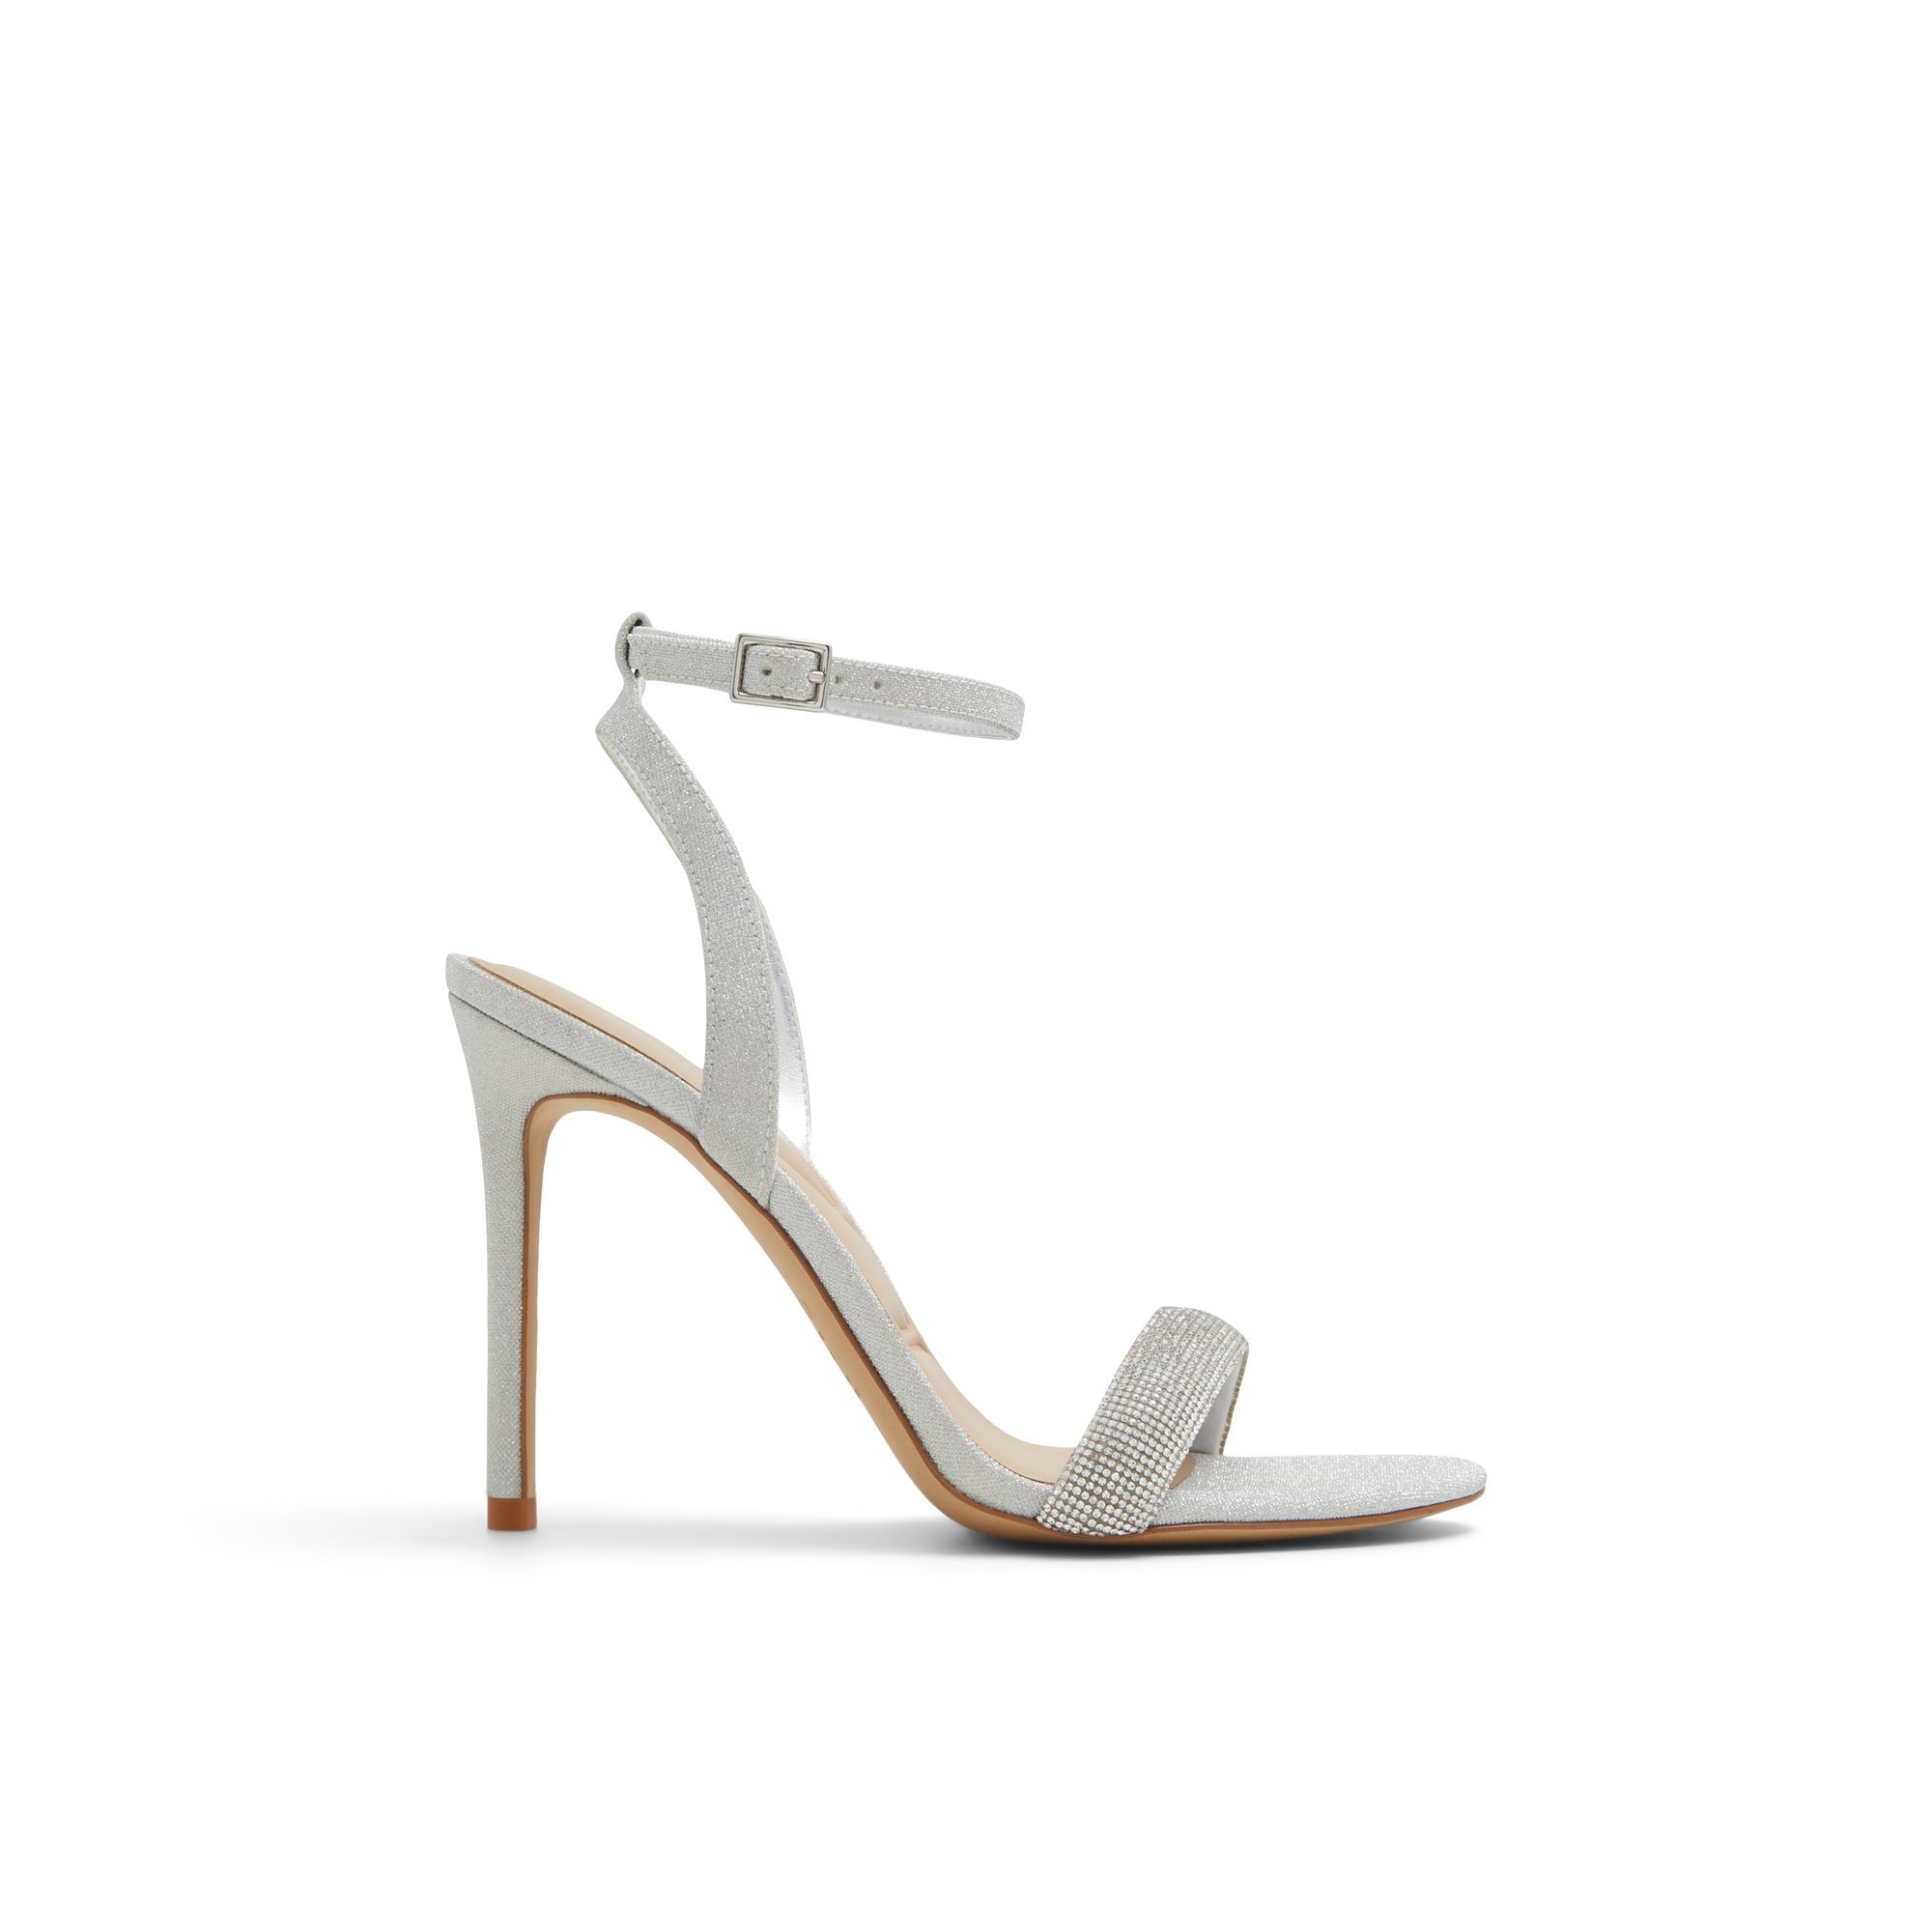 ALDO Perlea - Women's Strappy Sandal Sandals - Silver